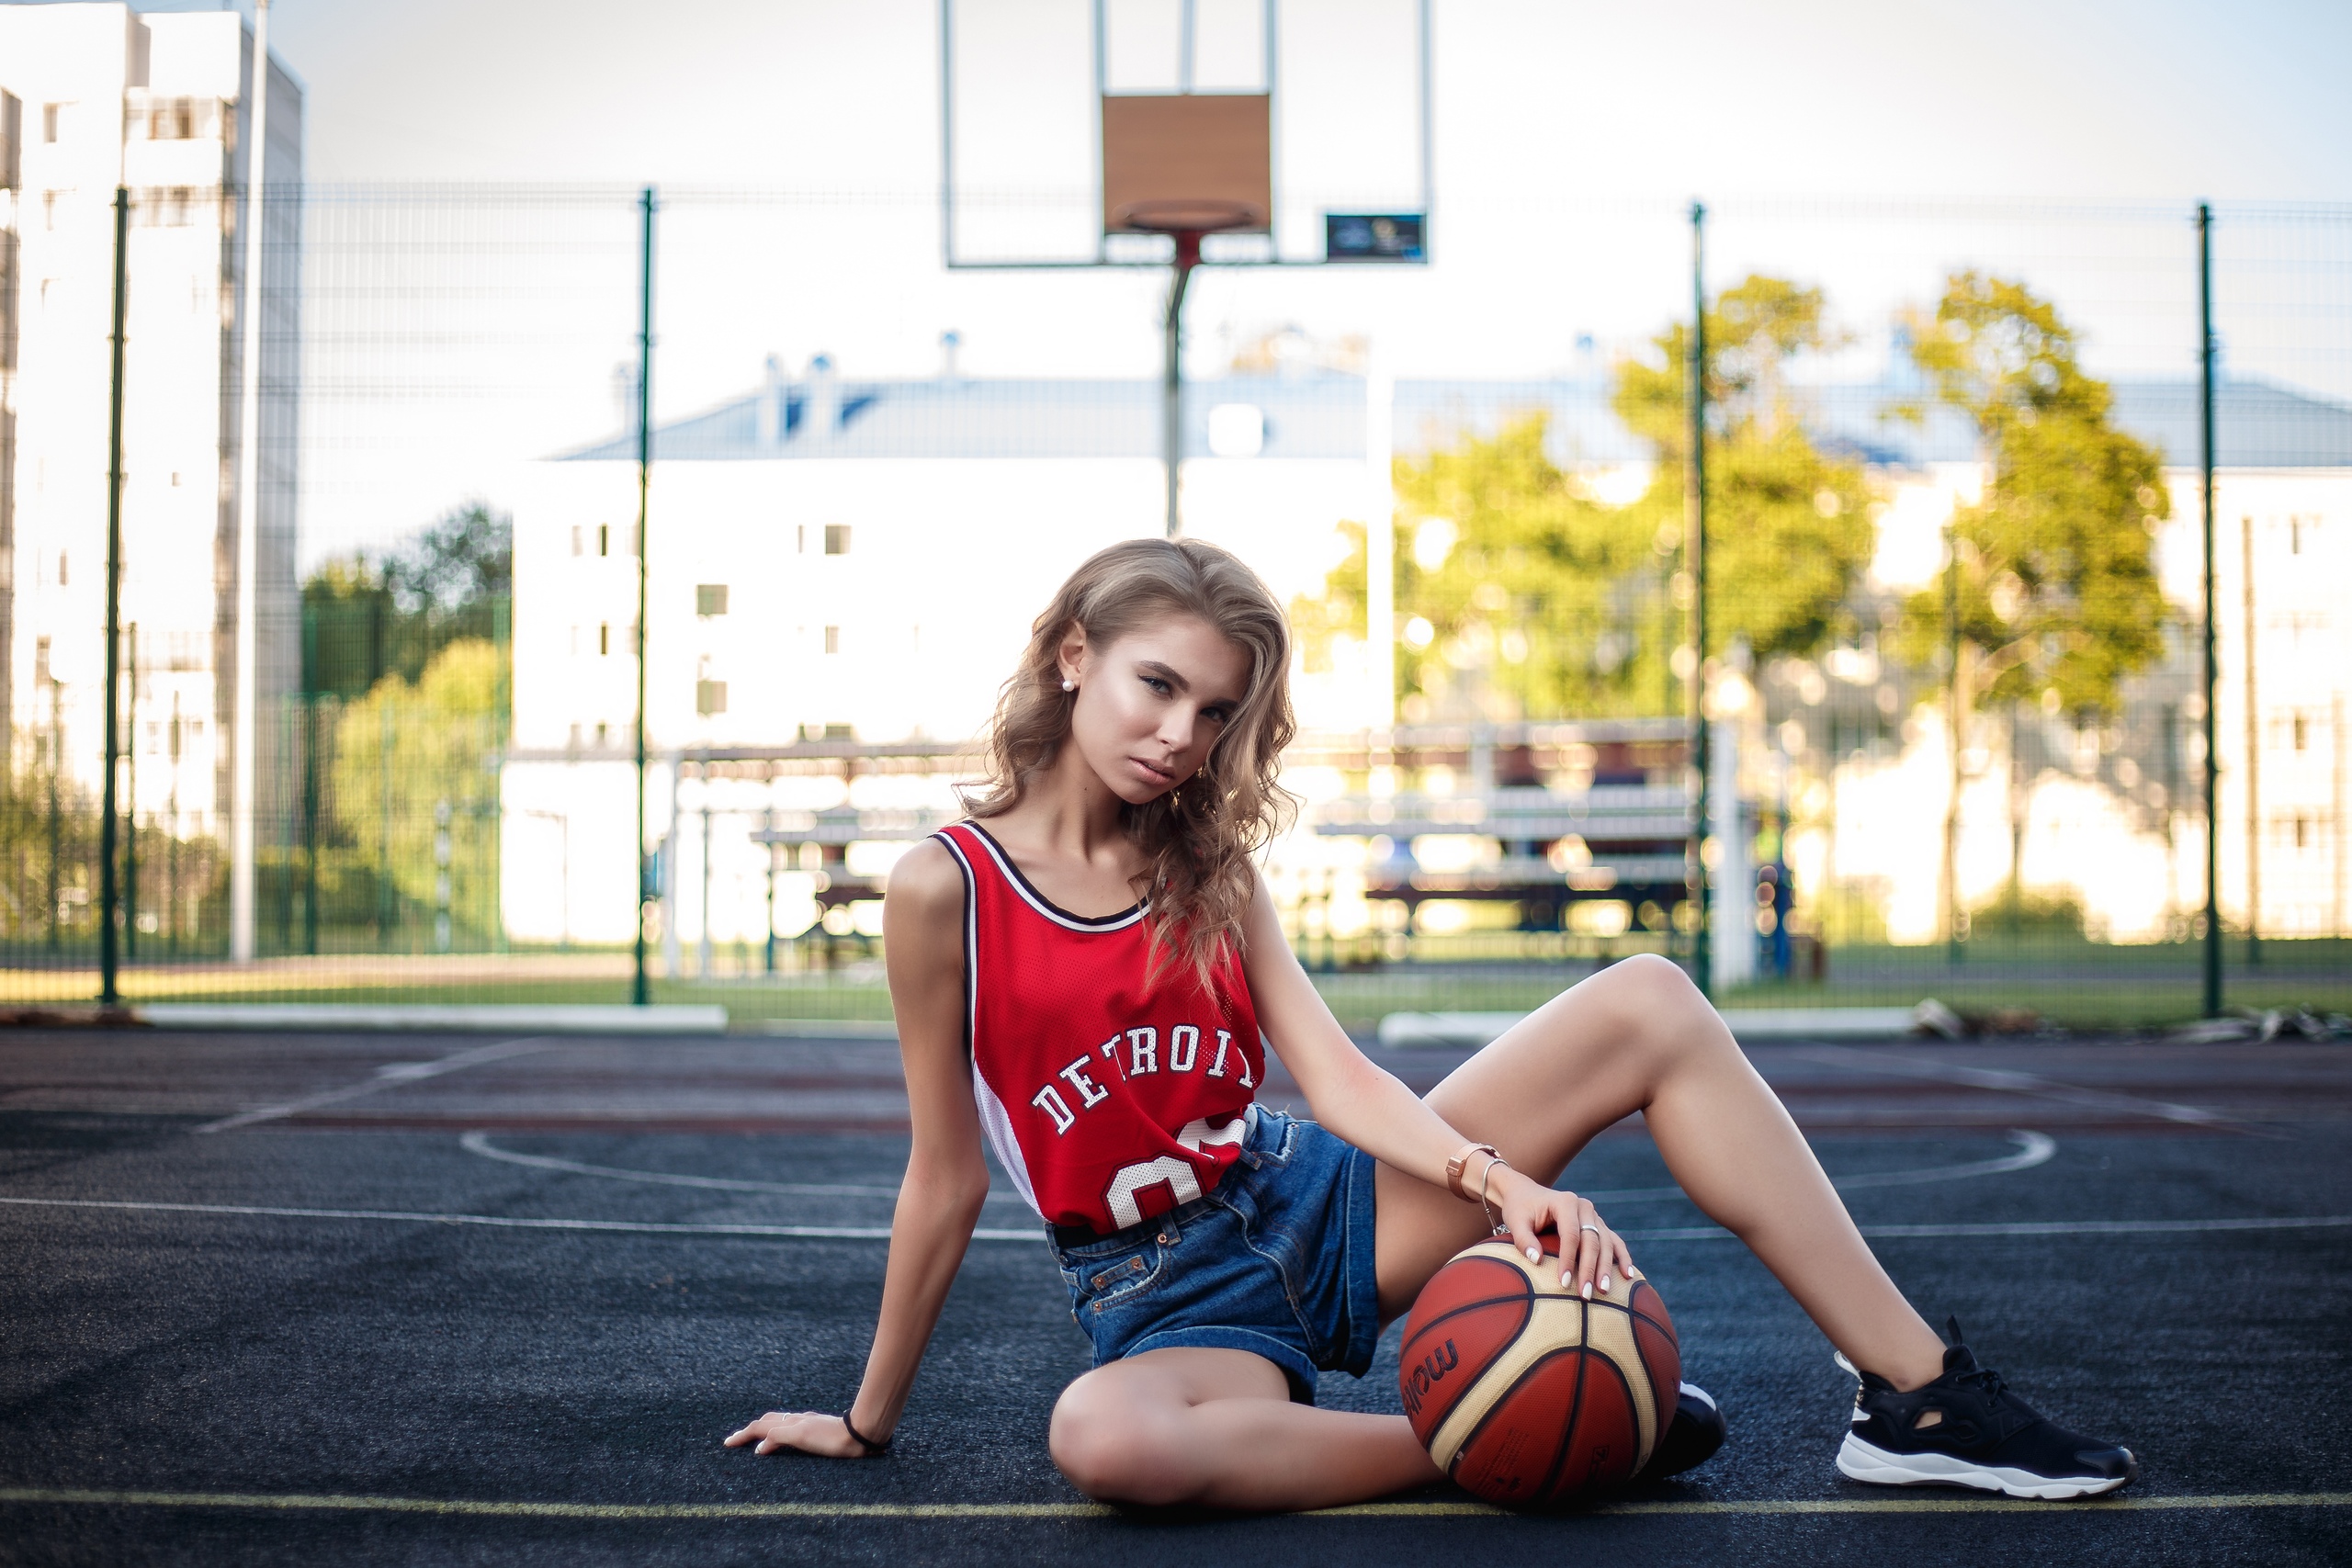 Imagenes De Basketball De Mujeres , HD Wallpaper & Backgrounds